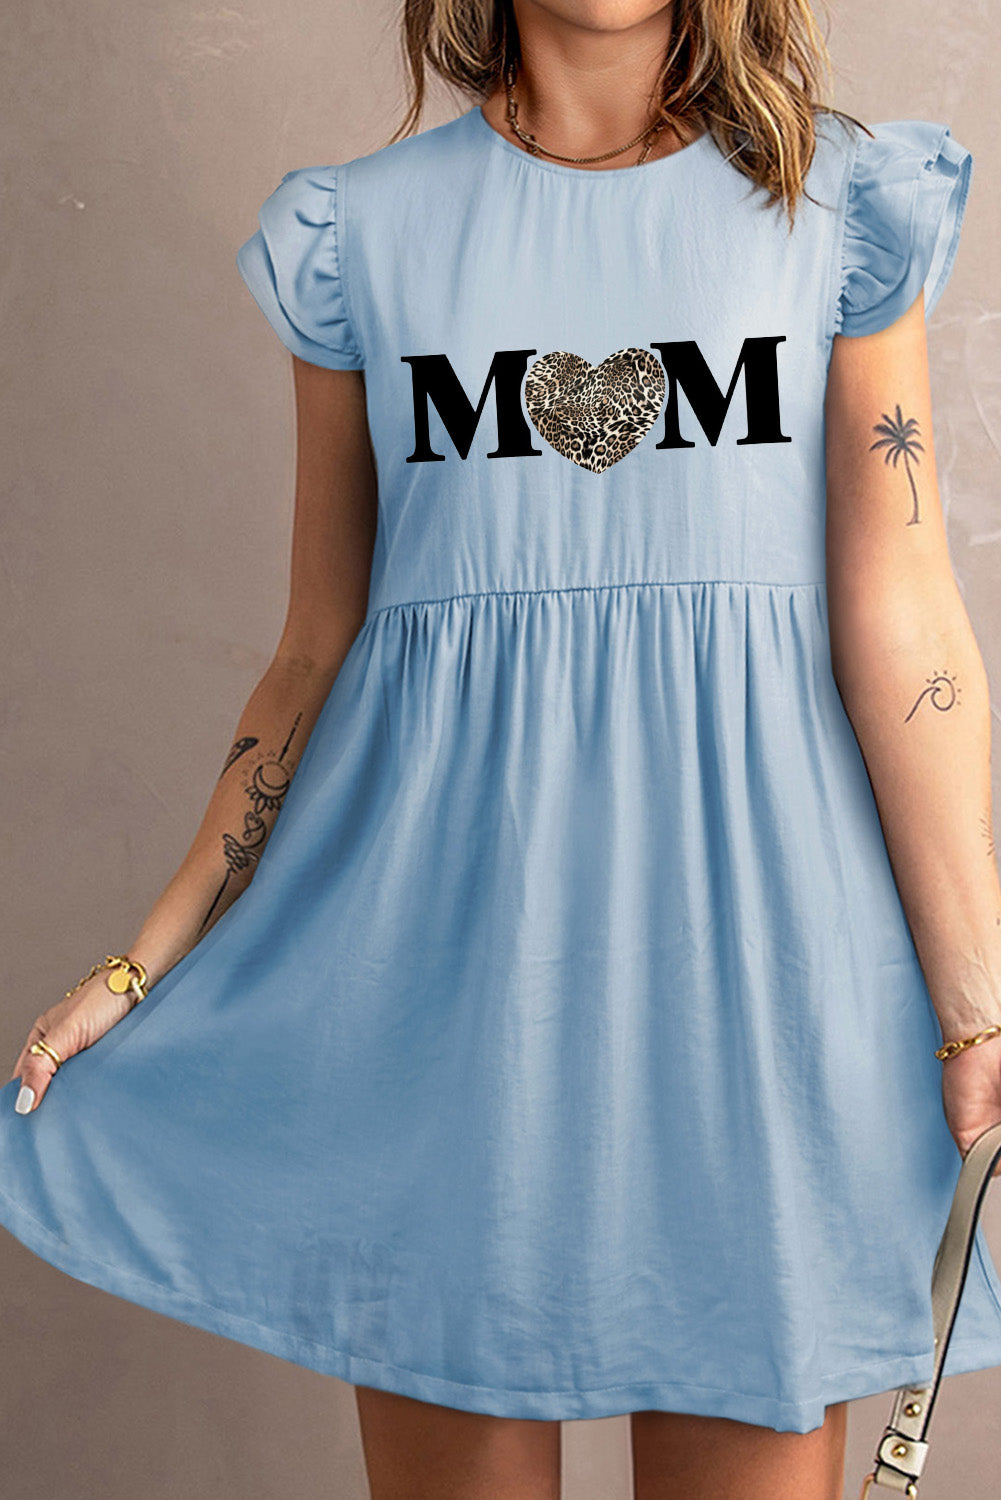 MOM Graphic Round Neck Cap Sleeve Dress